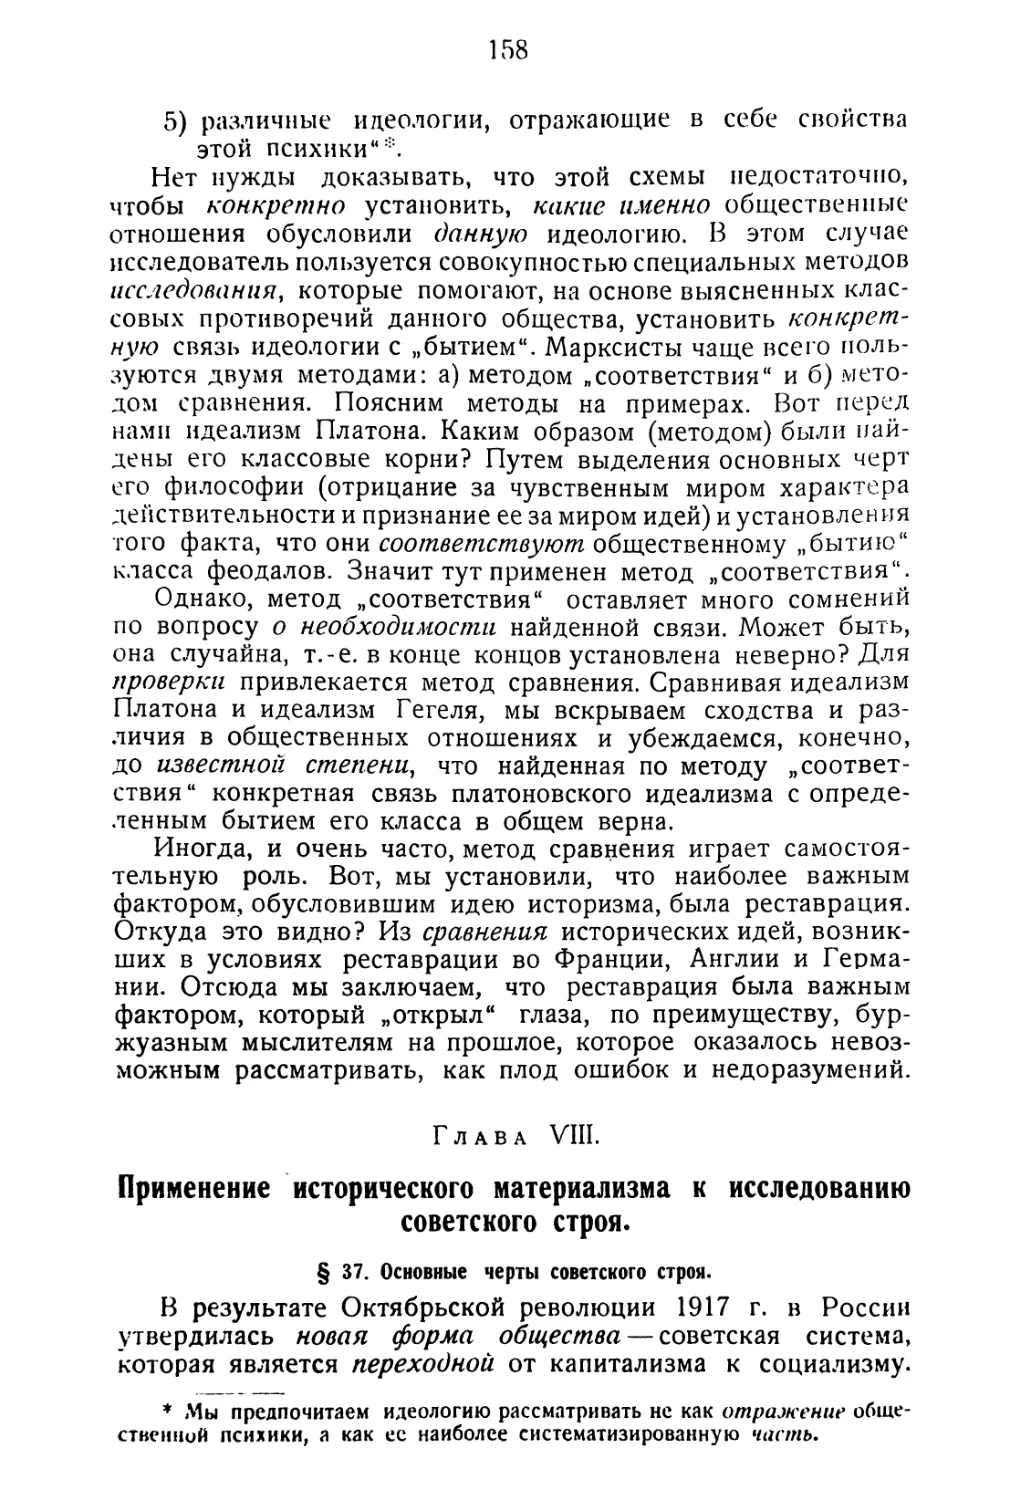 Глава VIII. Применение исторического материализма к исследованию советского строя